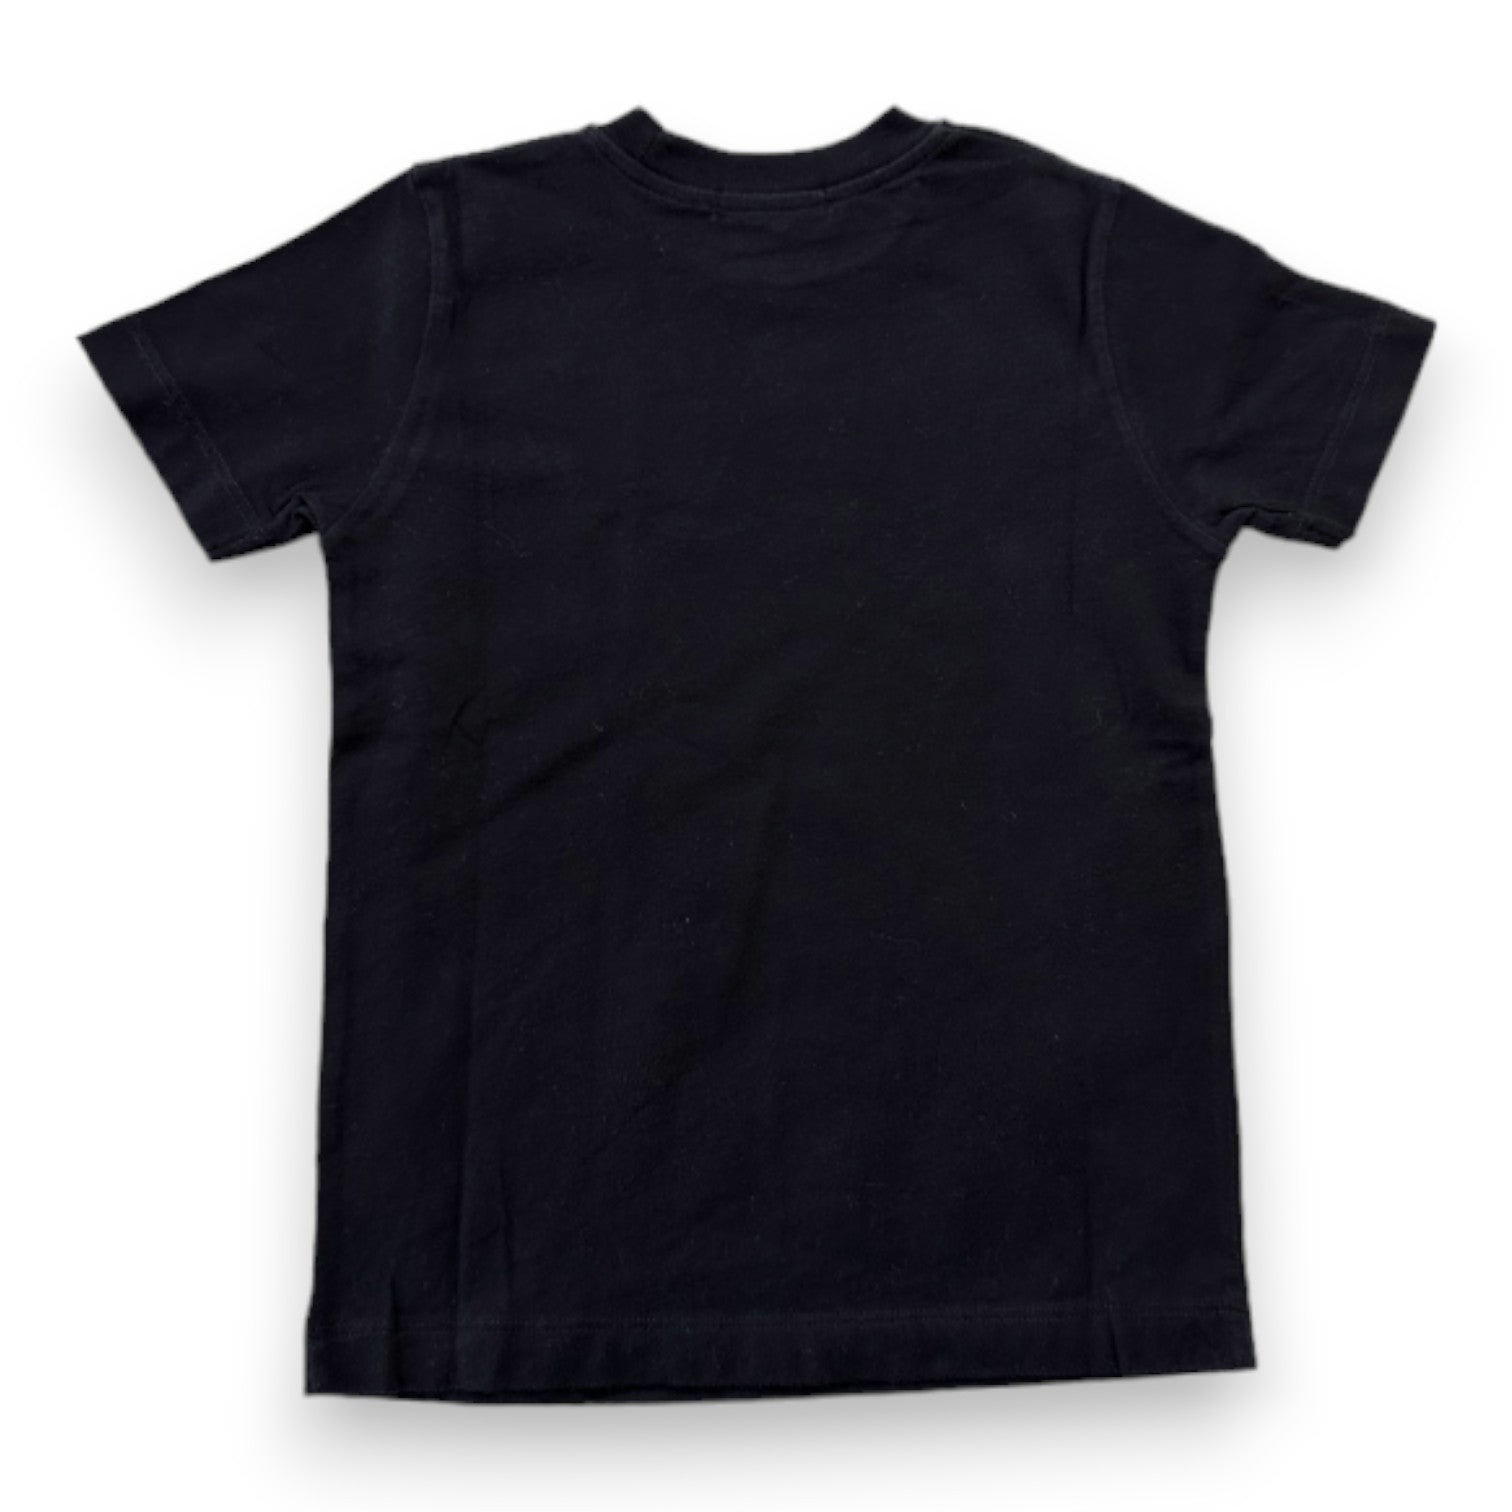 BONPOINT - T-shirt noir à manches courtes - 3 ans